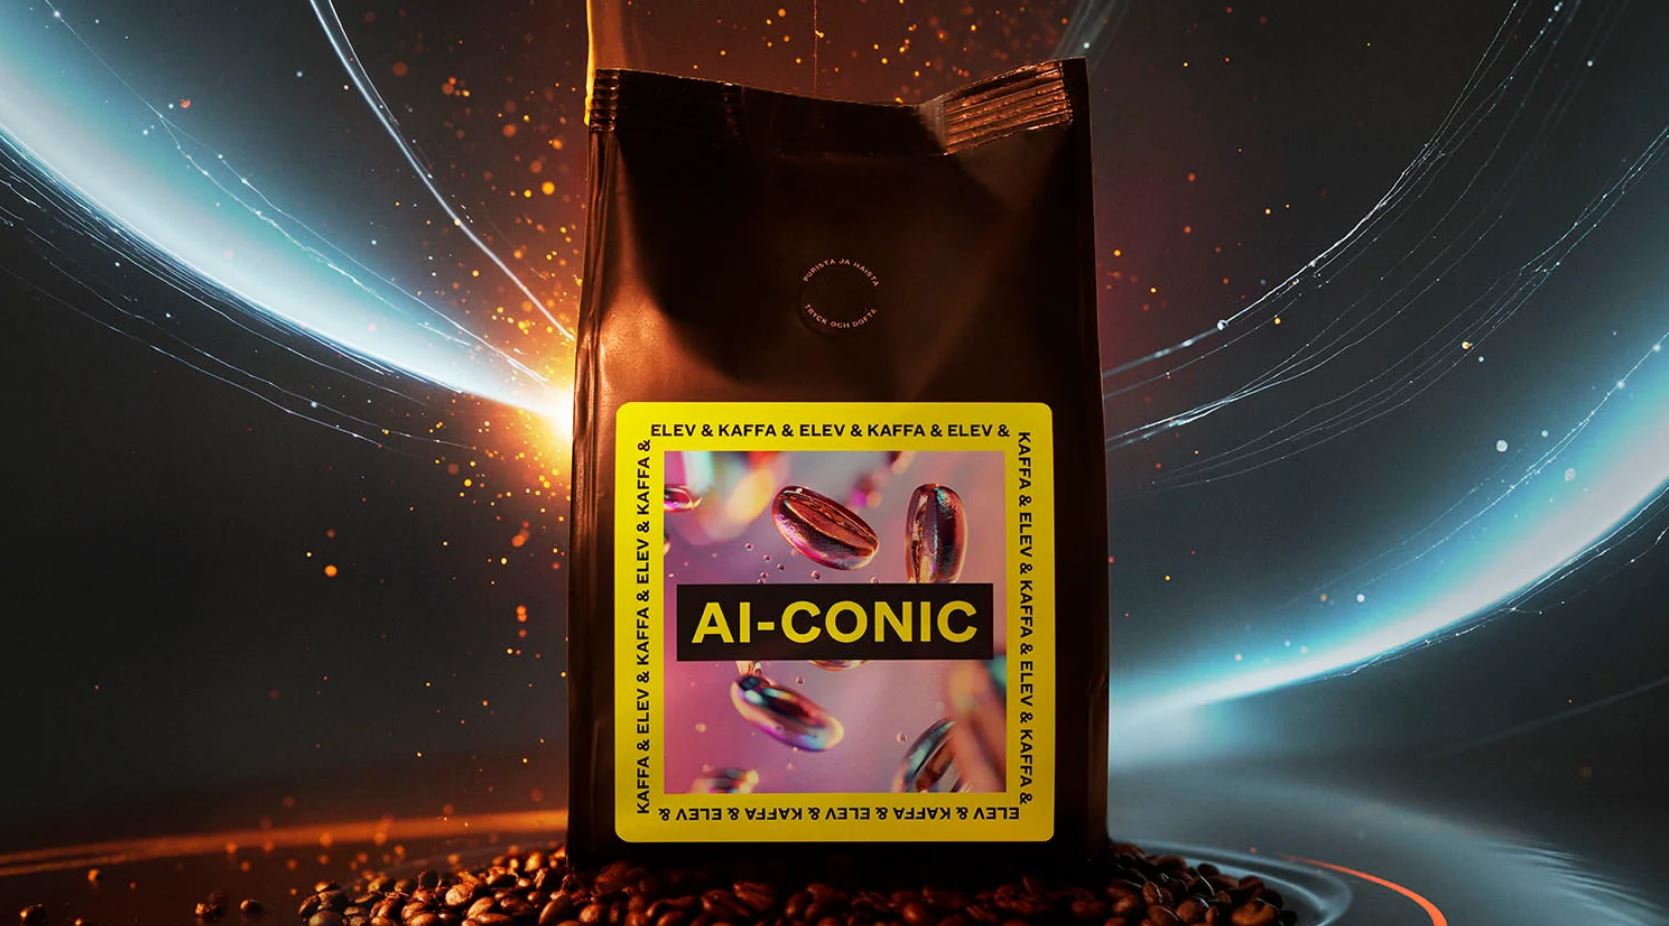 Ο καφές Ai-Conic © kaffaroastery.fi